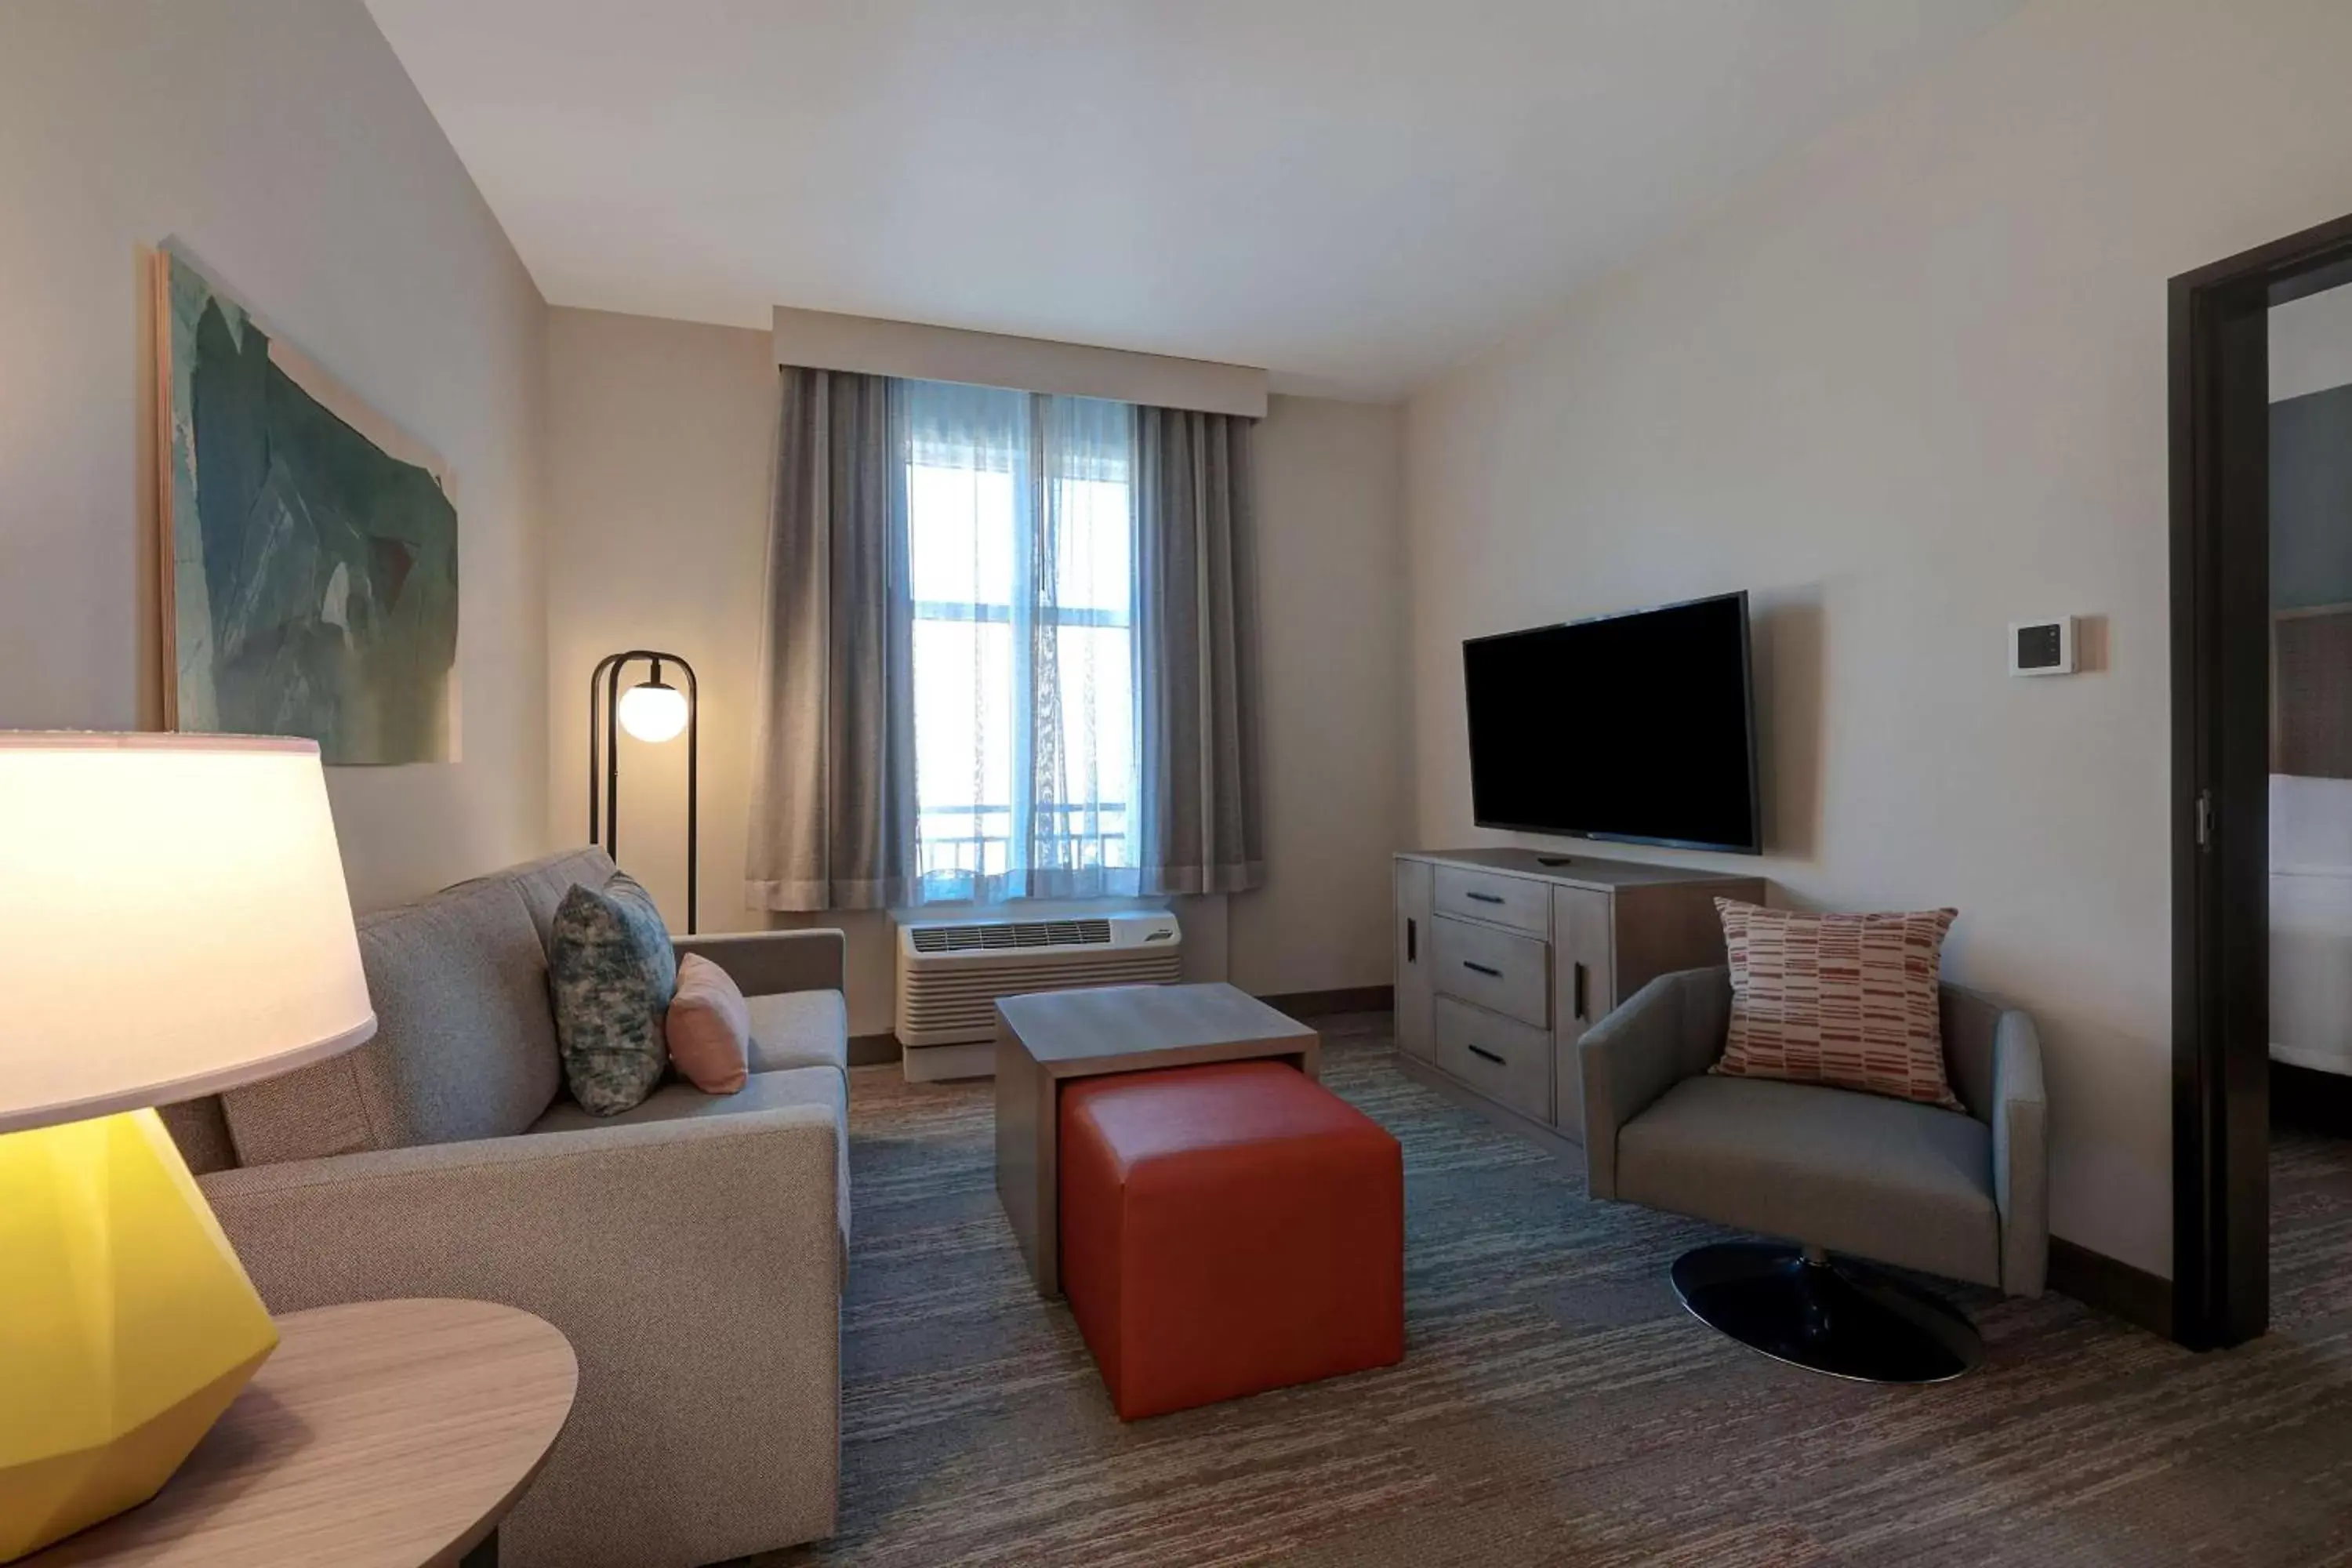 Bedroom, Seating Area in Homewood Suites By Hilton Santa Clarita/Valencia, Ca